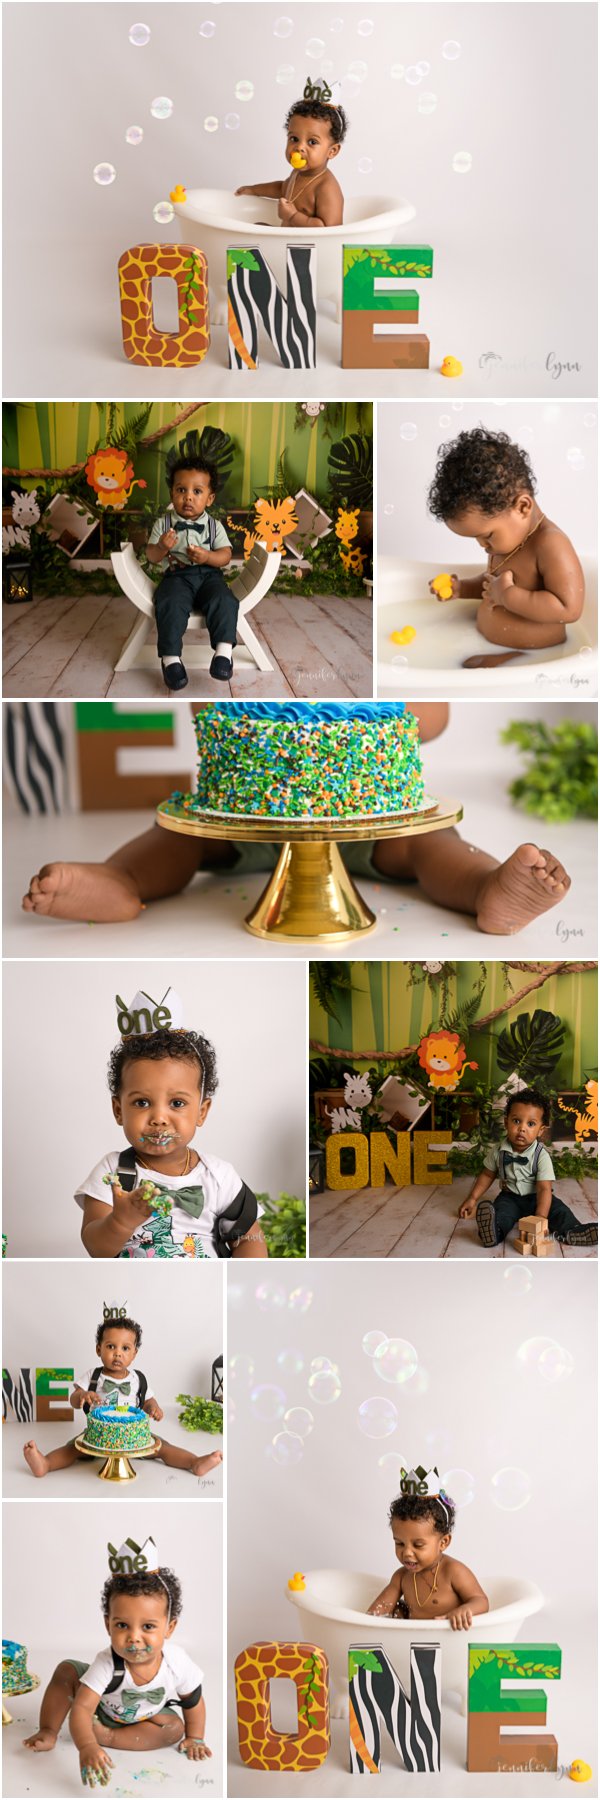 https://images.squarespace-cdn.com/content/v1/56328ce4e4b0c9af4ef34dc1/73f0c456-af94-4c6b-a44d-1836f58b1f2c/Yeab+first+birthday+baby+boy+wild+one+cake+smash+milk+bath+colorful+denver+photographer.jpg